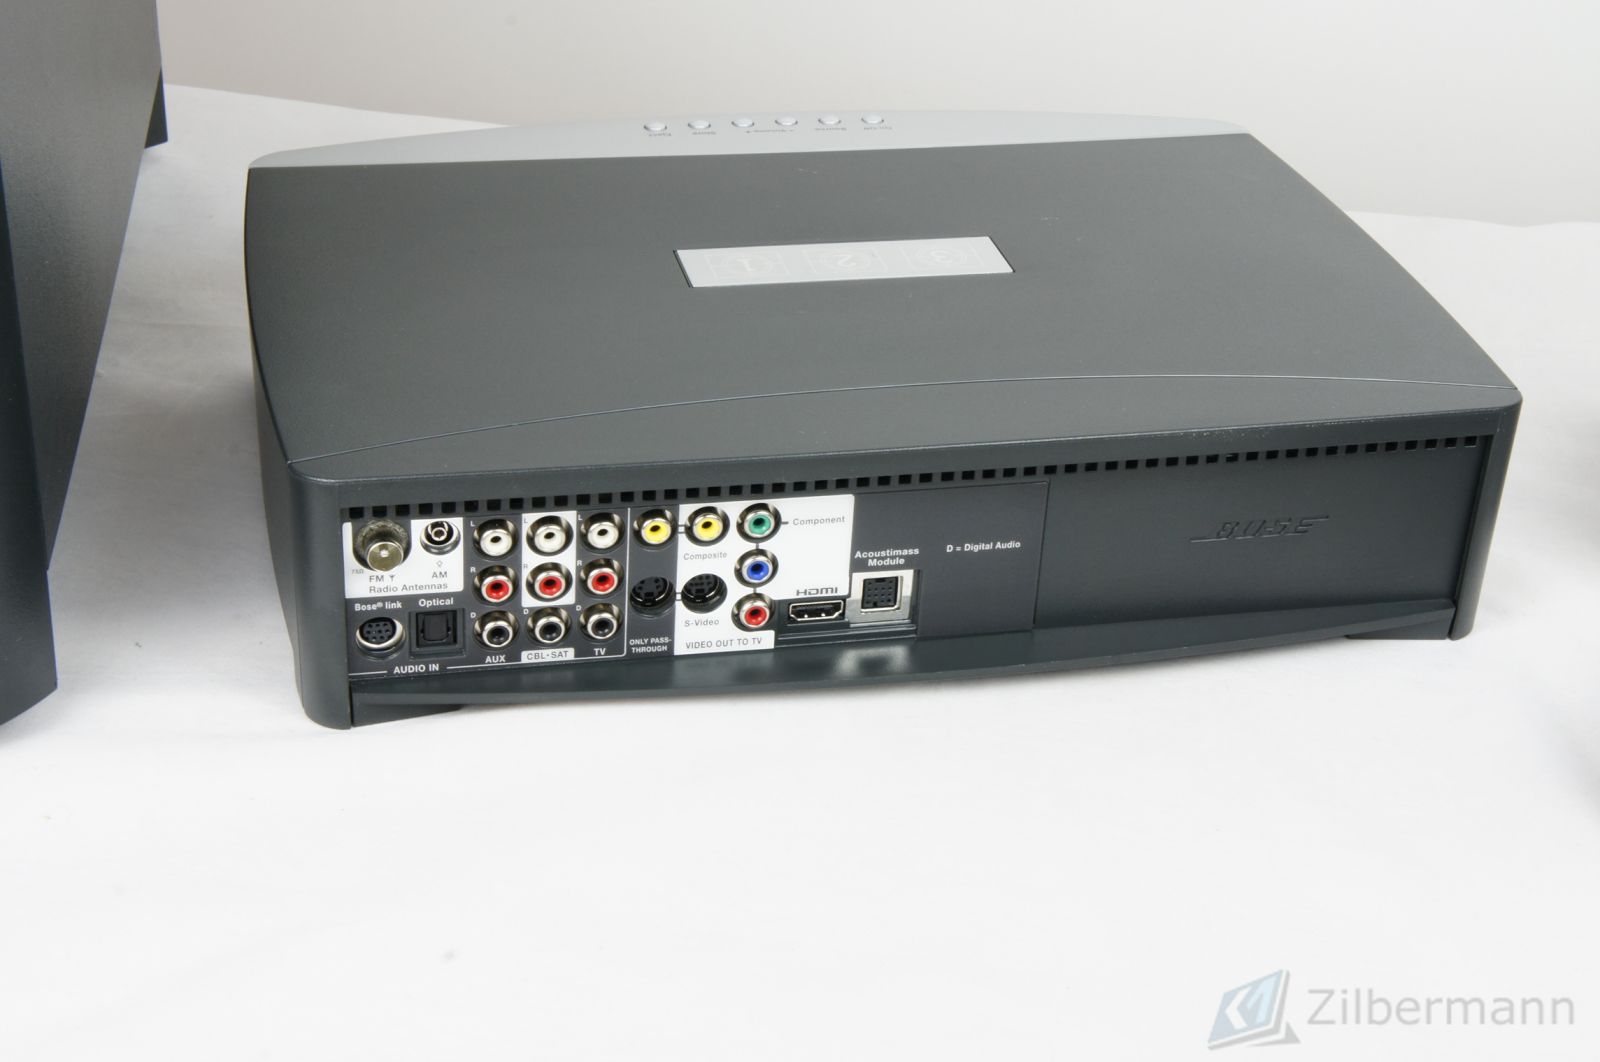 Bose_321_3-2-1_GSX_Series_III_Heimkino-system_mit_Festplatte_und_HDMI_10